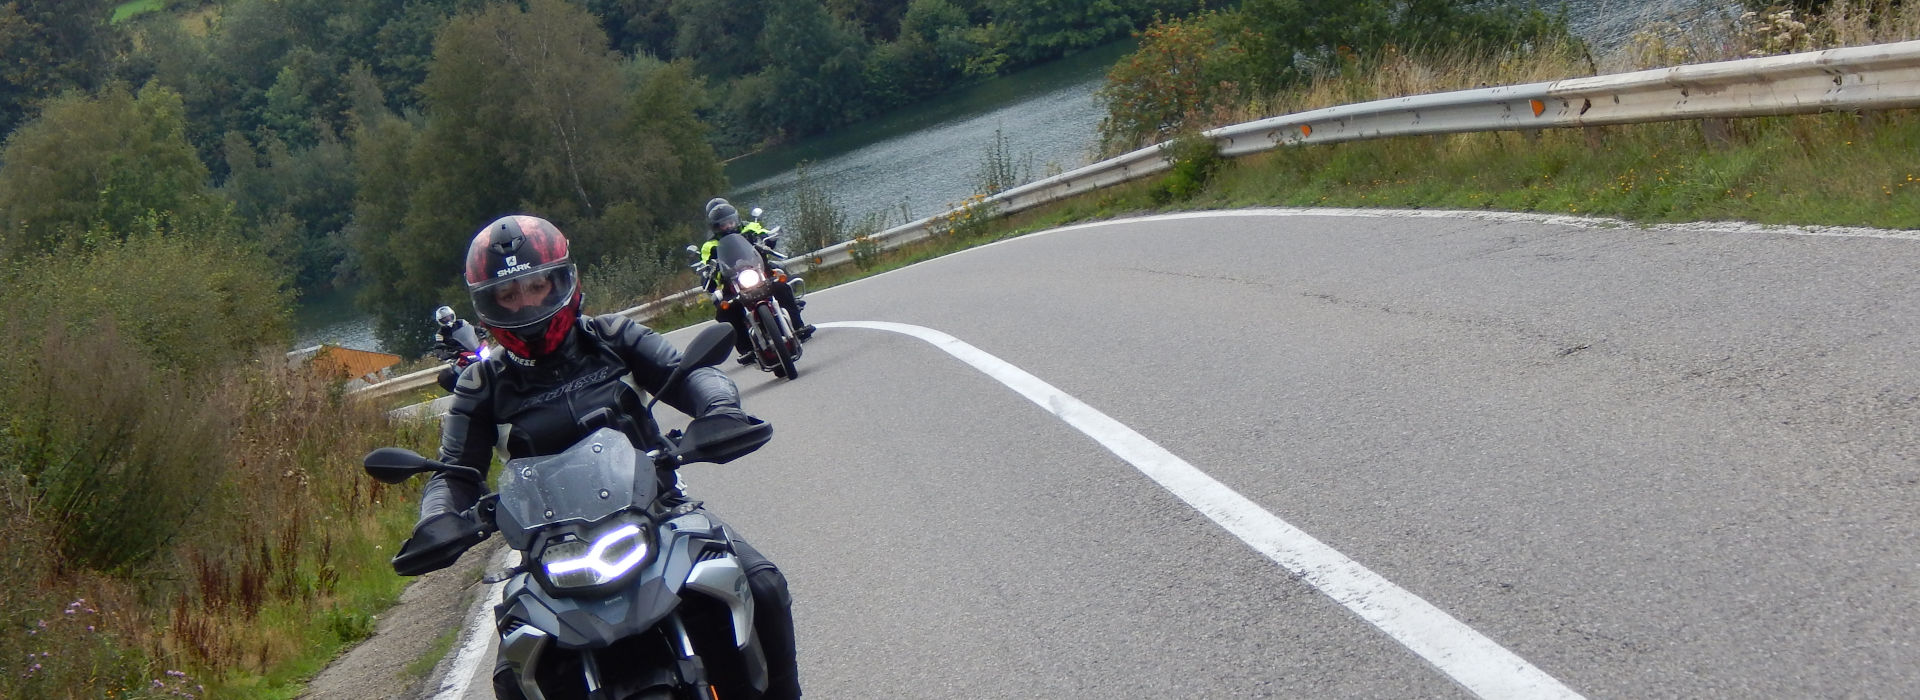 Motorrijbewijspoint Alphen aan den Rijn motorrijlessen